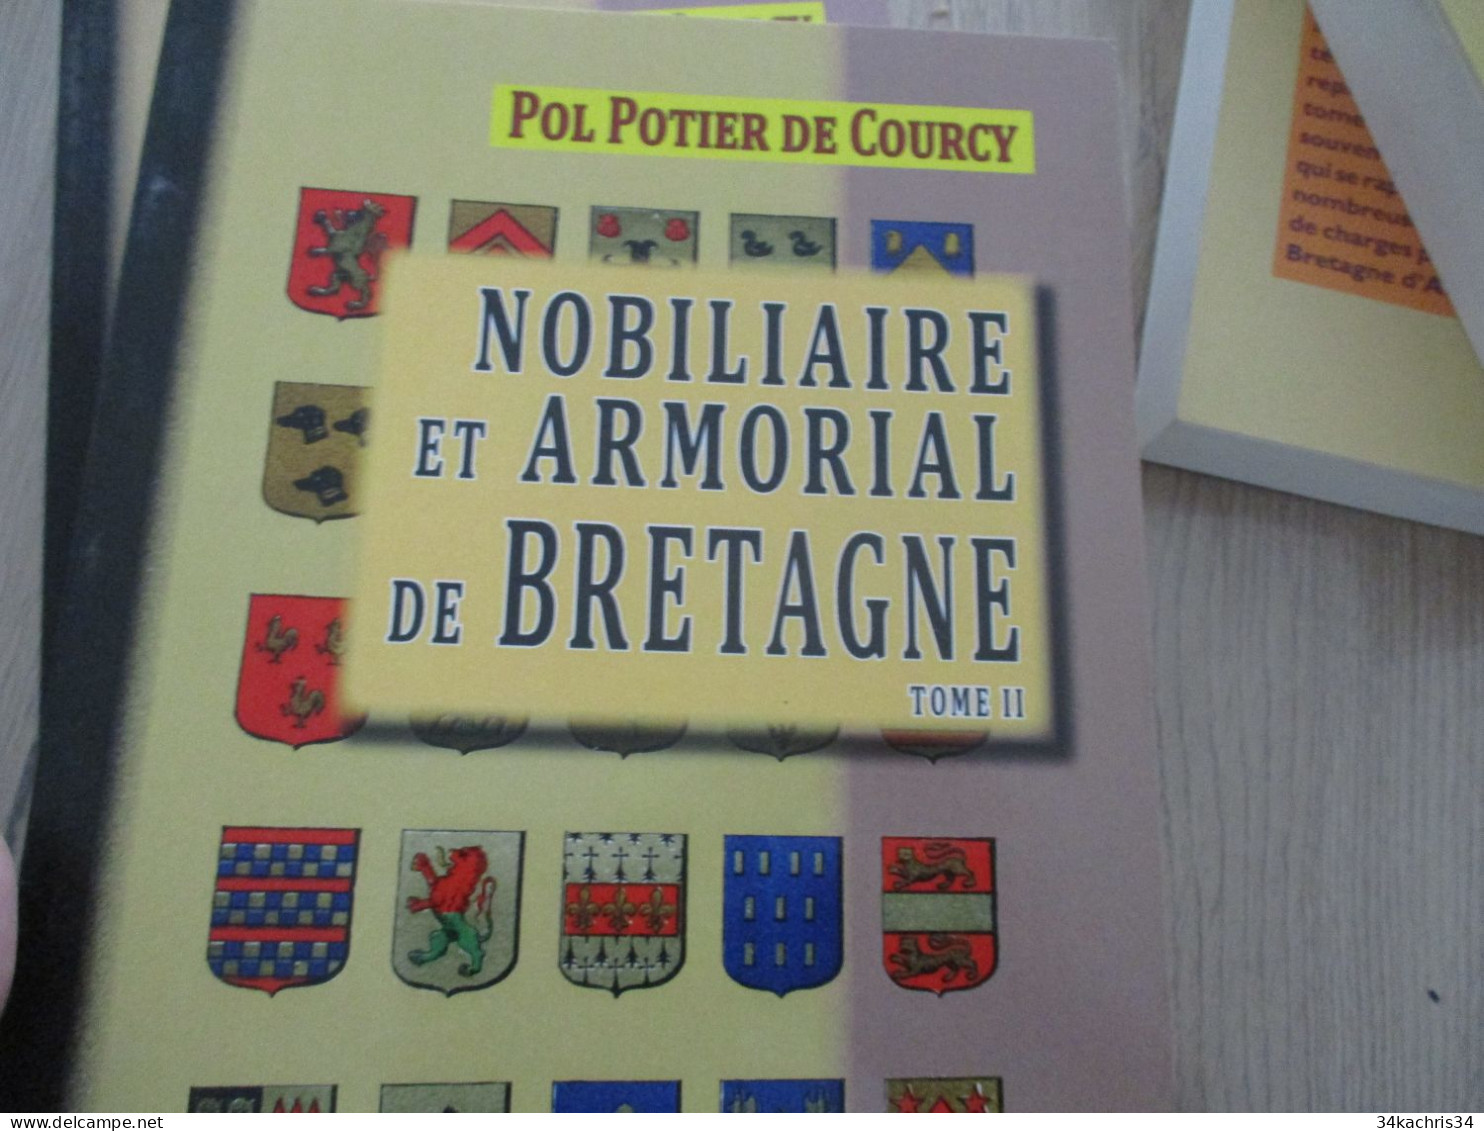 POL POTIER DE COURCY Nobiliaire et Armorial de Bretagne 4 Tomes neufs Chez Editions des régionalismes